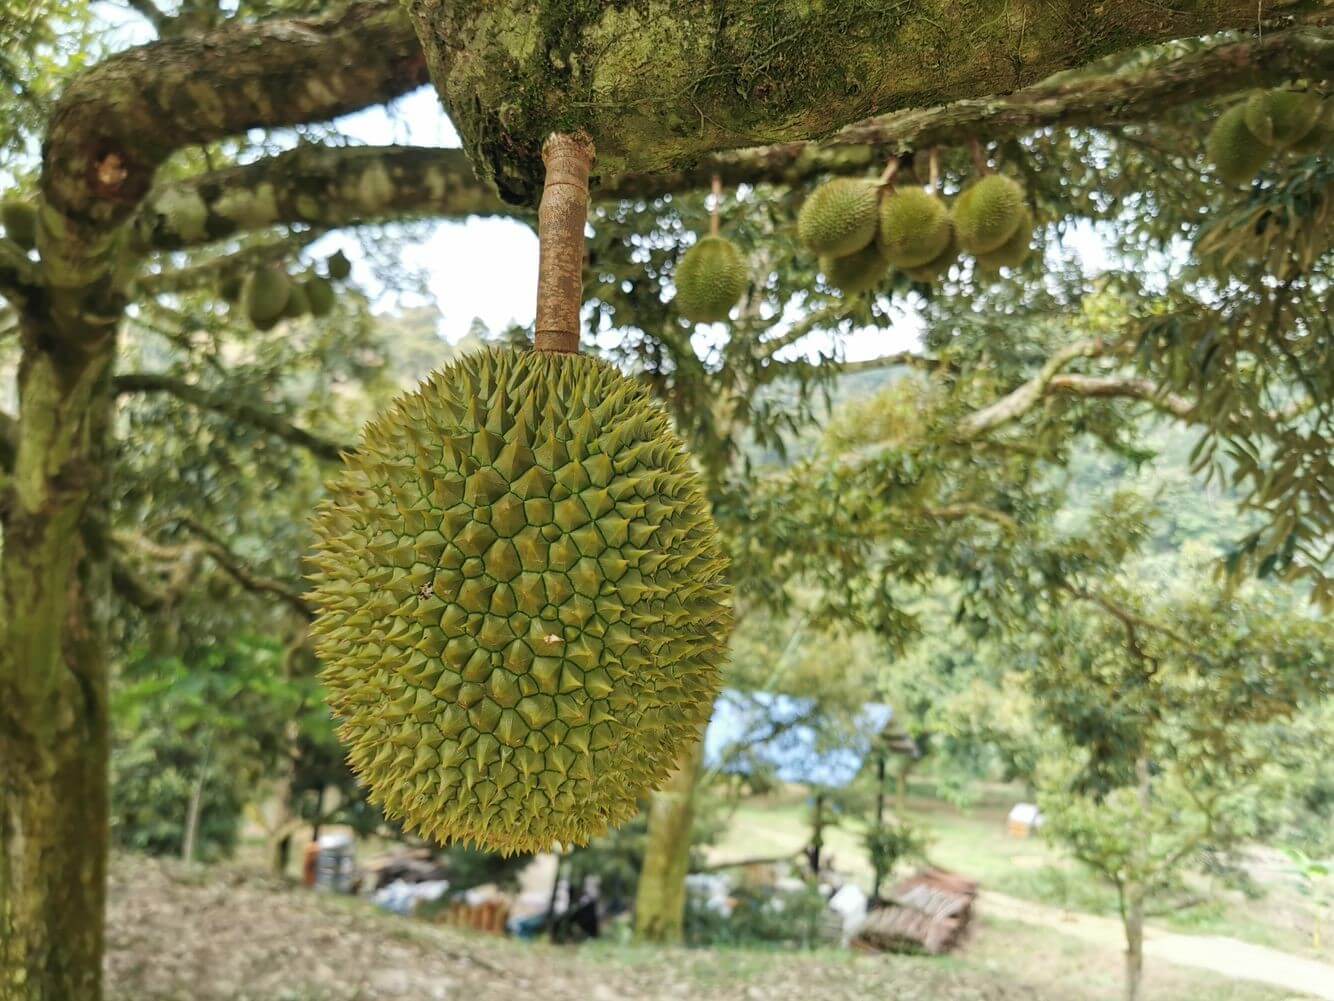 Grade A durian that followed INO Nature’s fertilizer program.